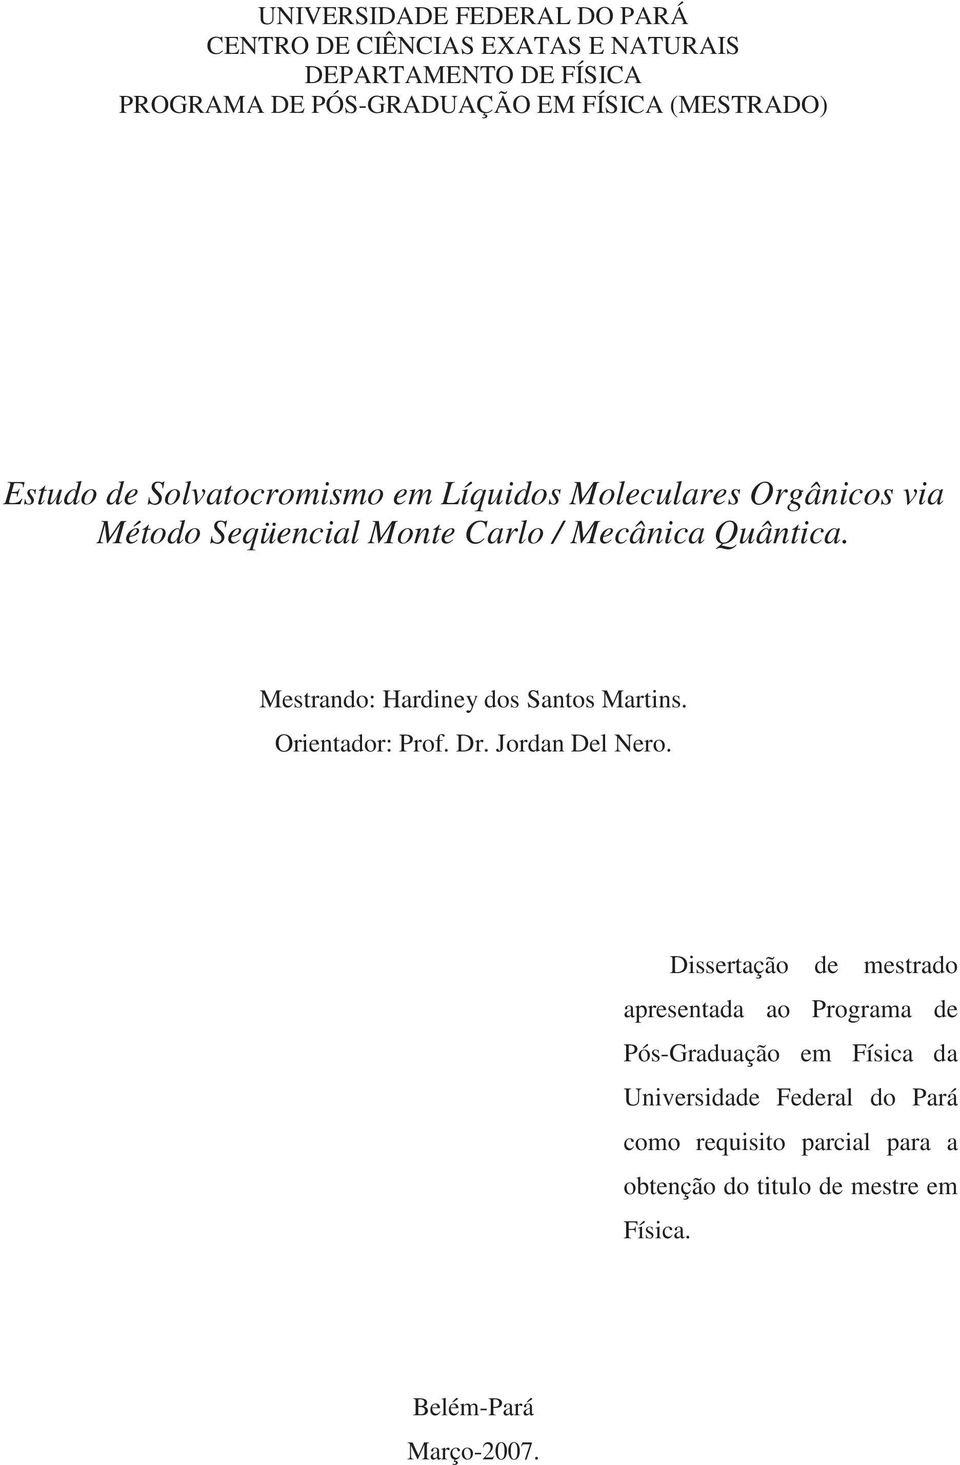 Mestrando: Hardiney dos Santos Martins. Orientador: Prof. Dr. Jordan Del Nero.